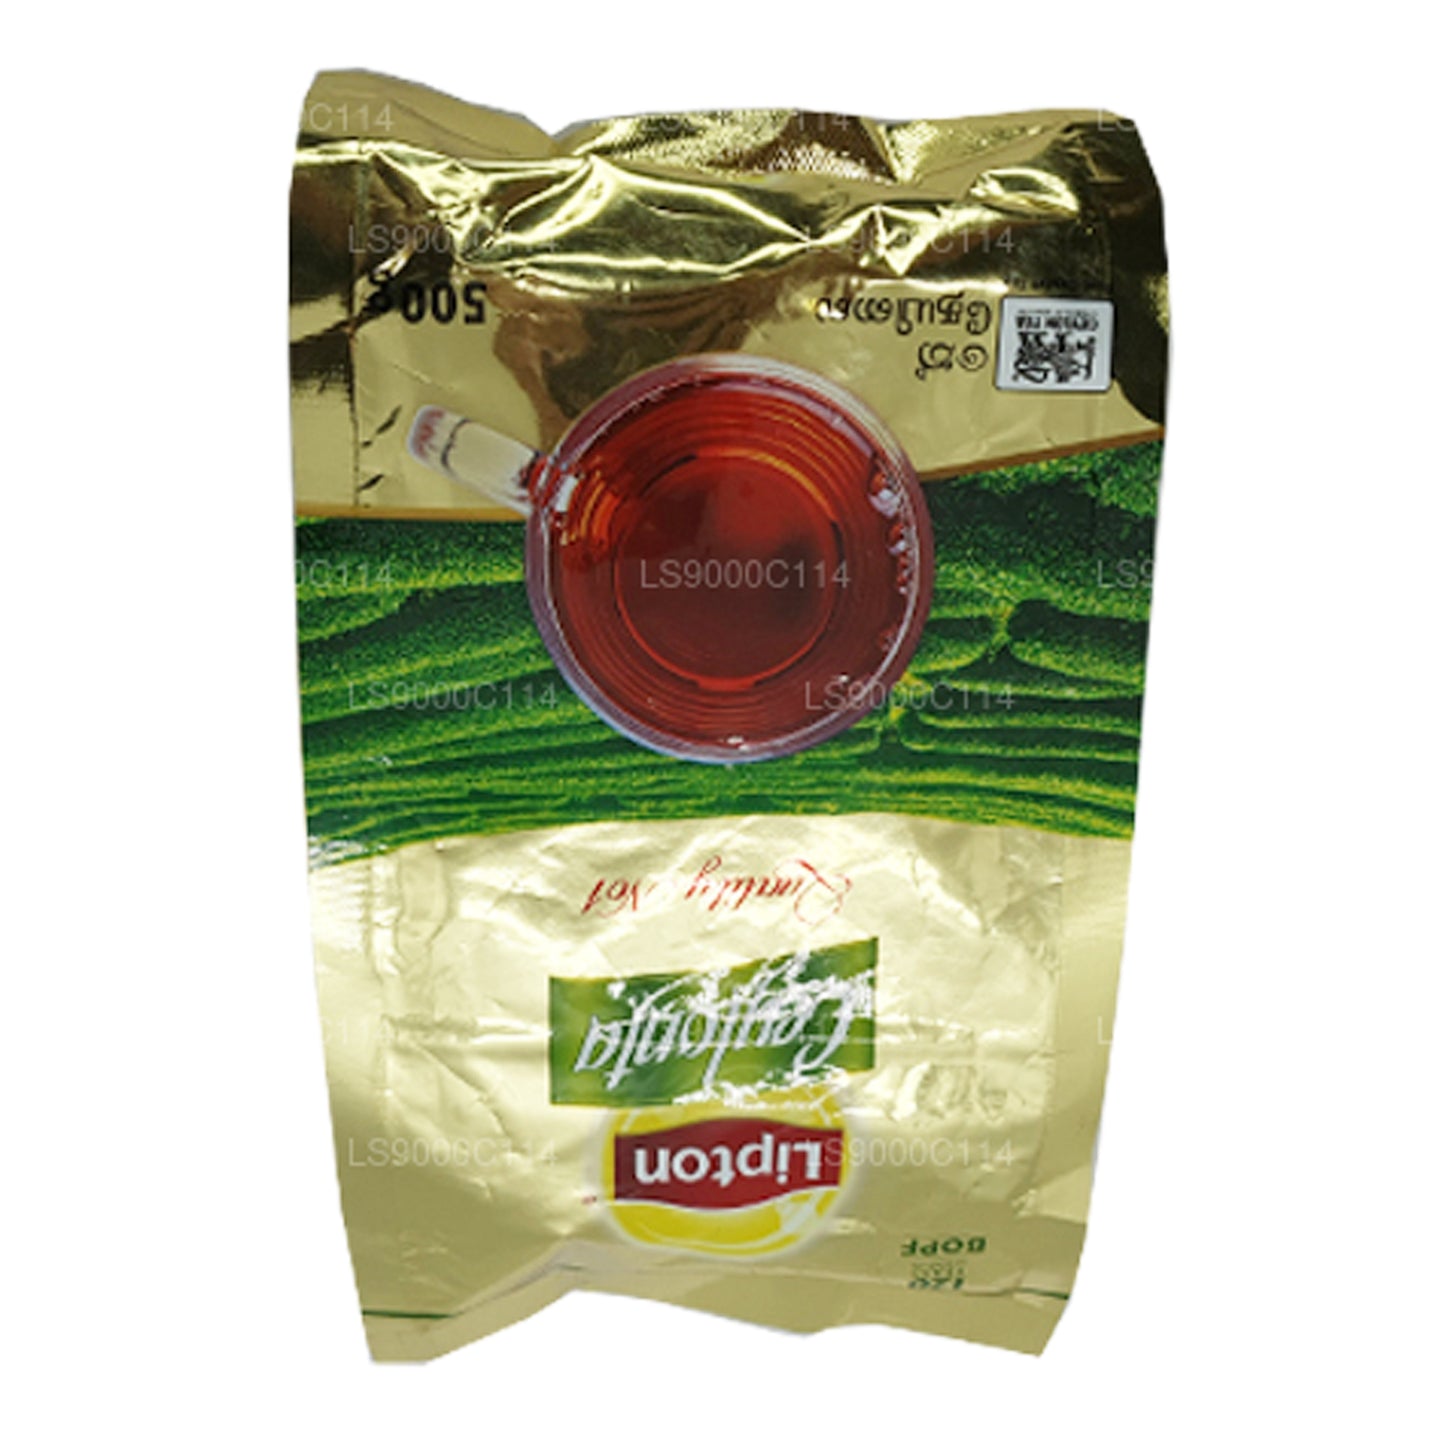 Lipton Ceylonta teblad (500 g)